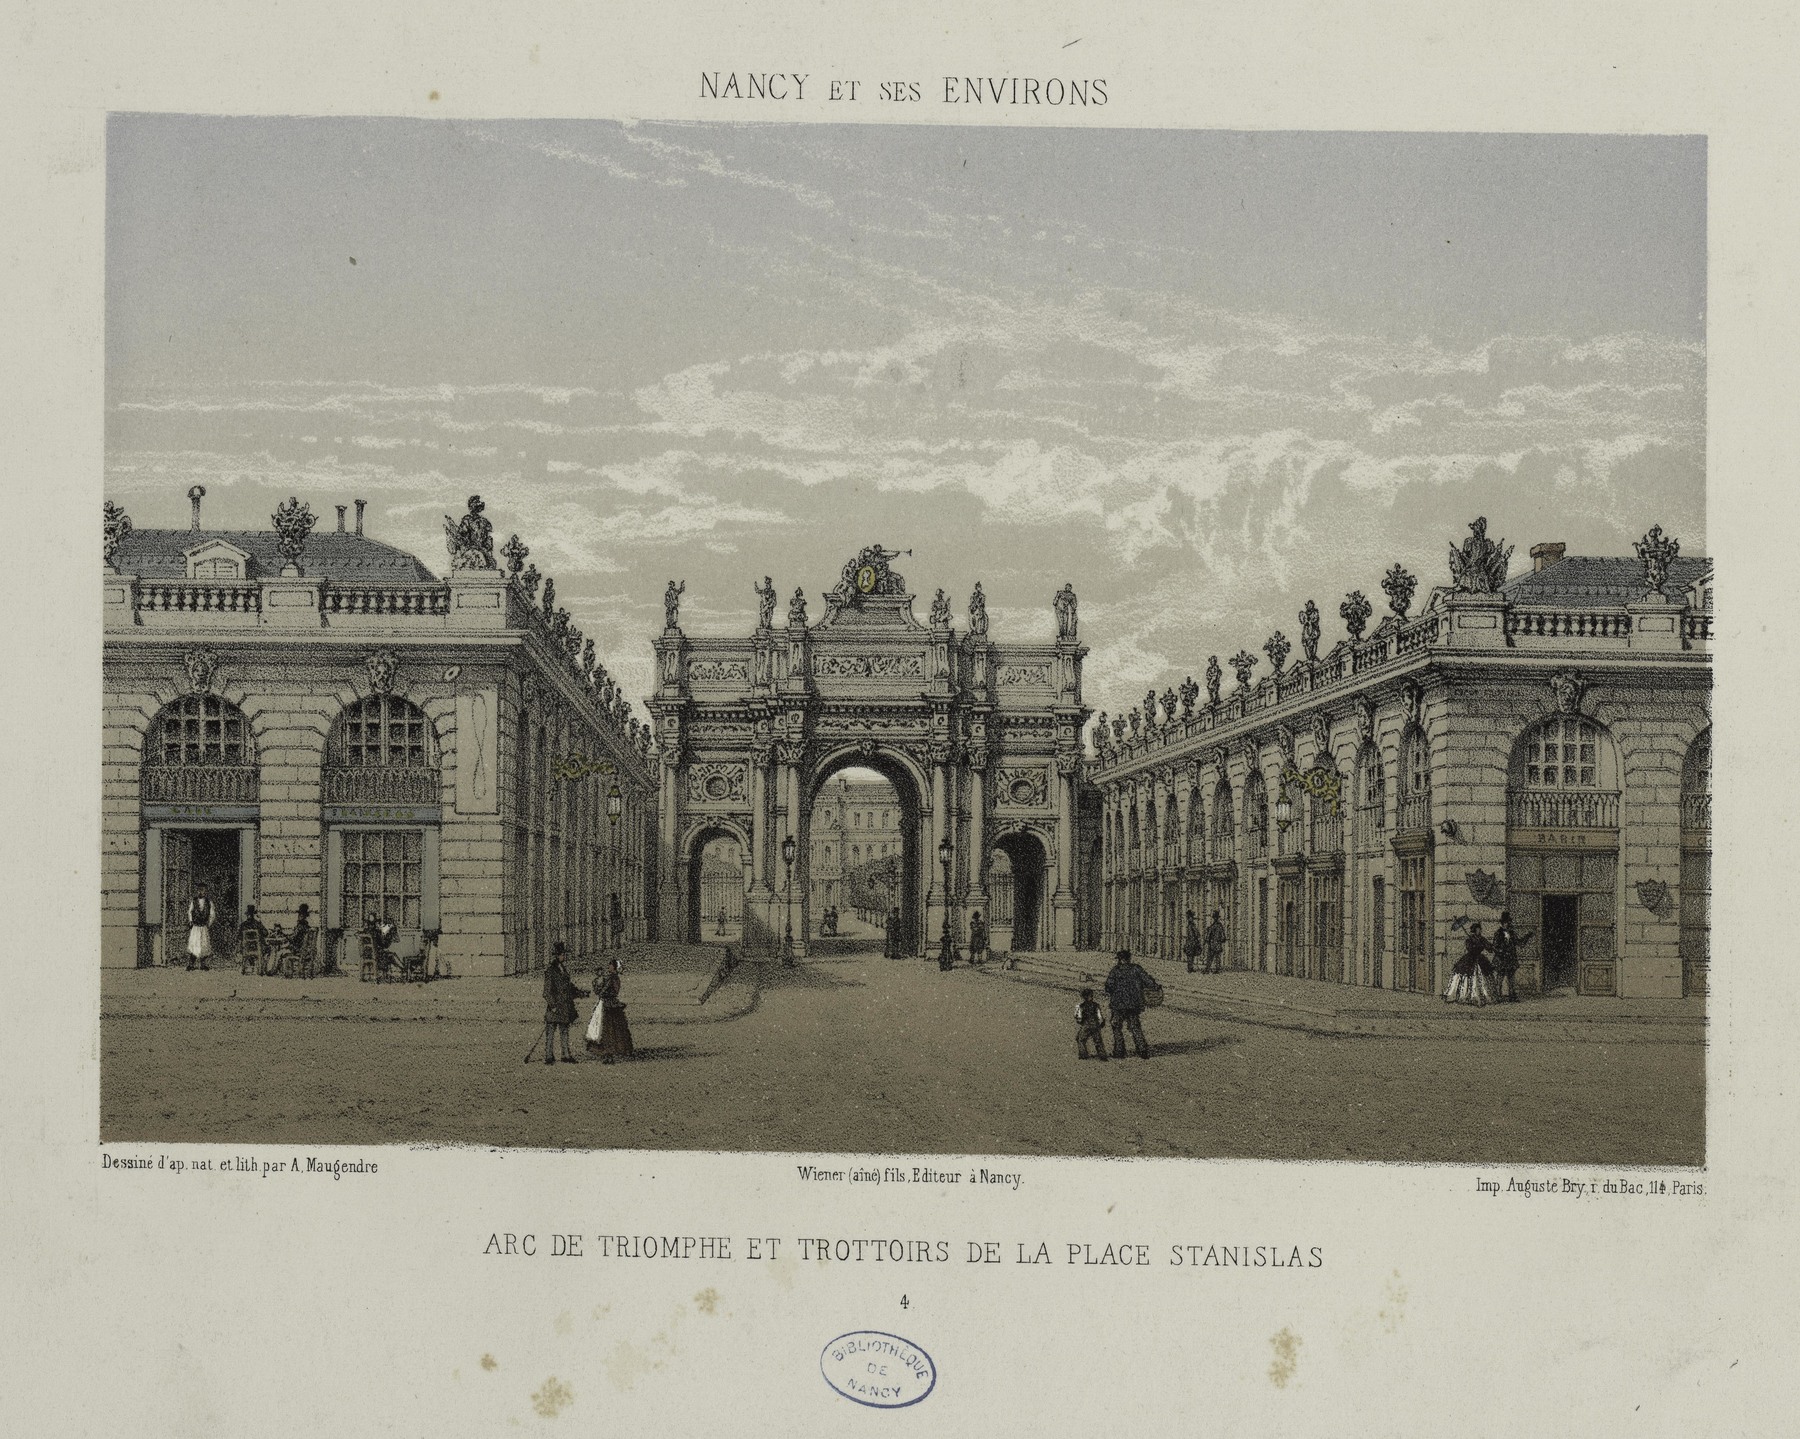 Contenu du Arc de triomphe et trottoirs de la place Stanislas